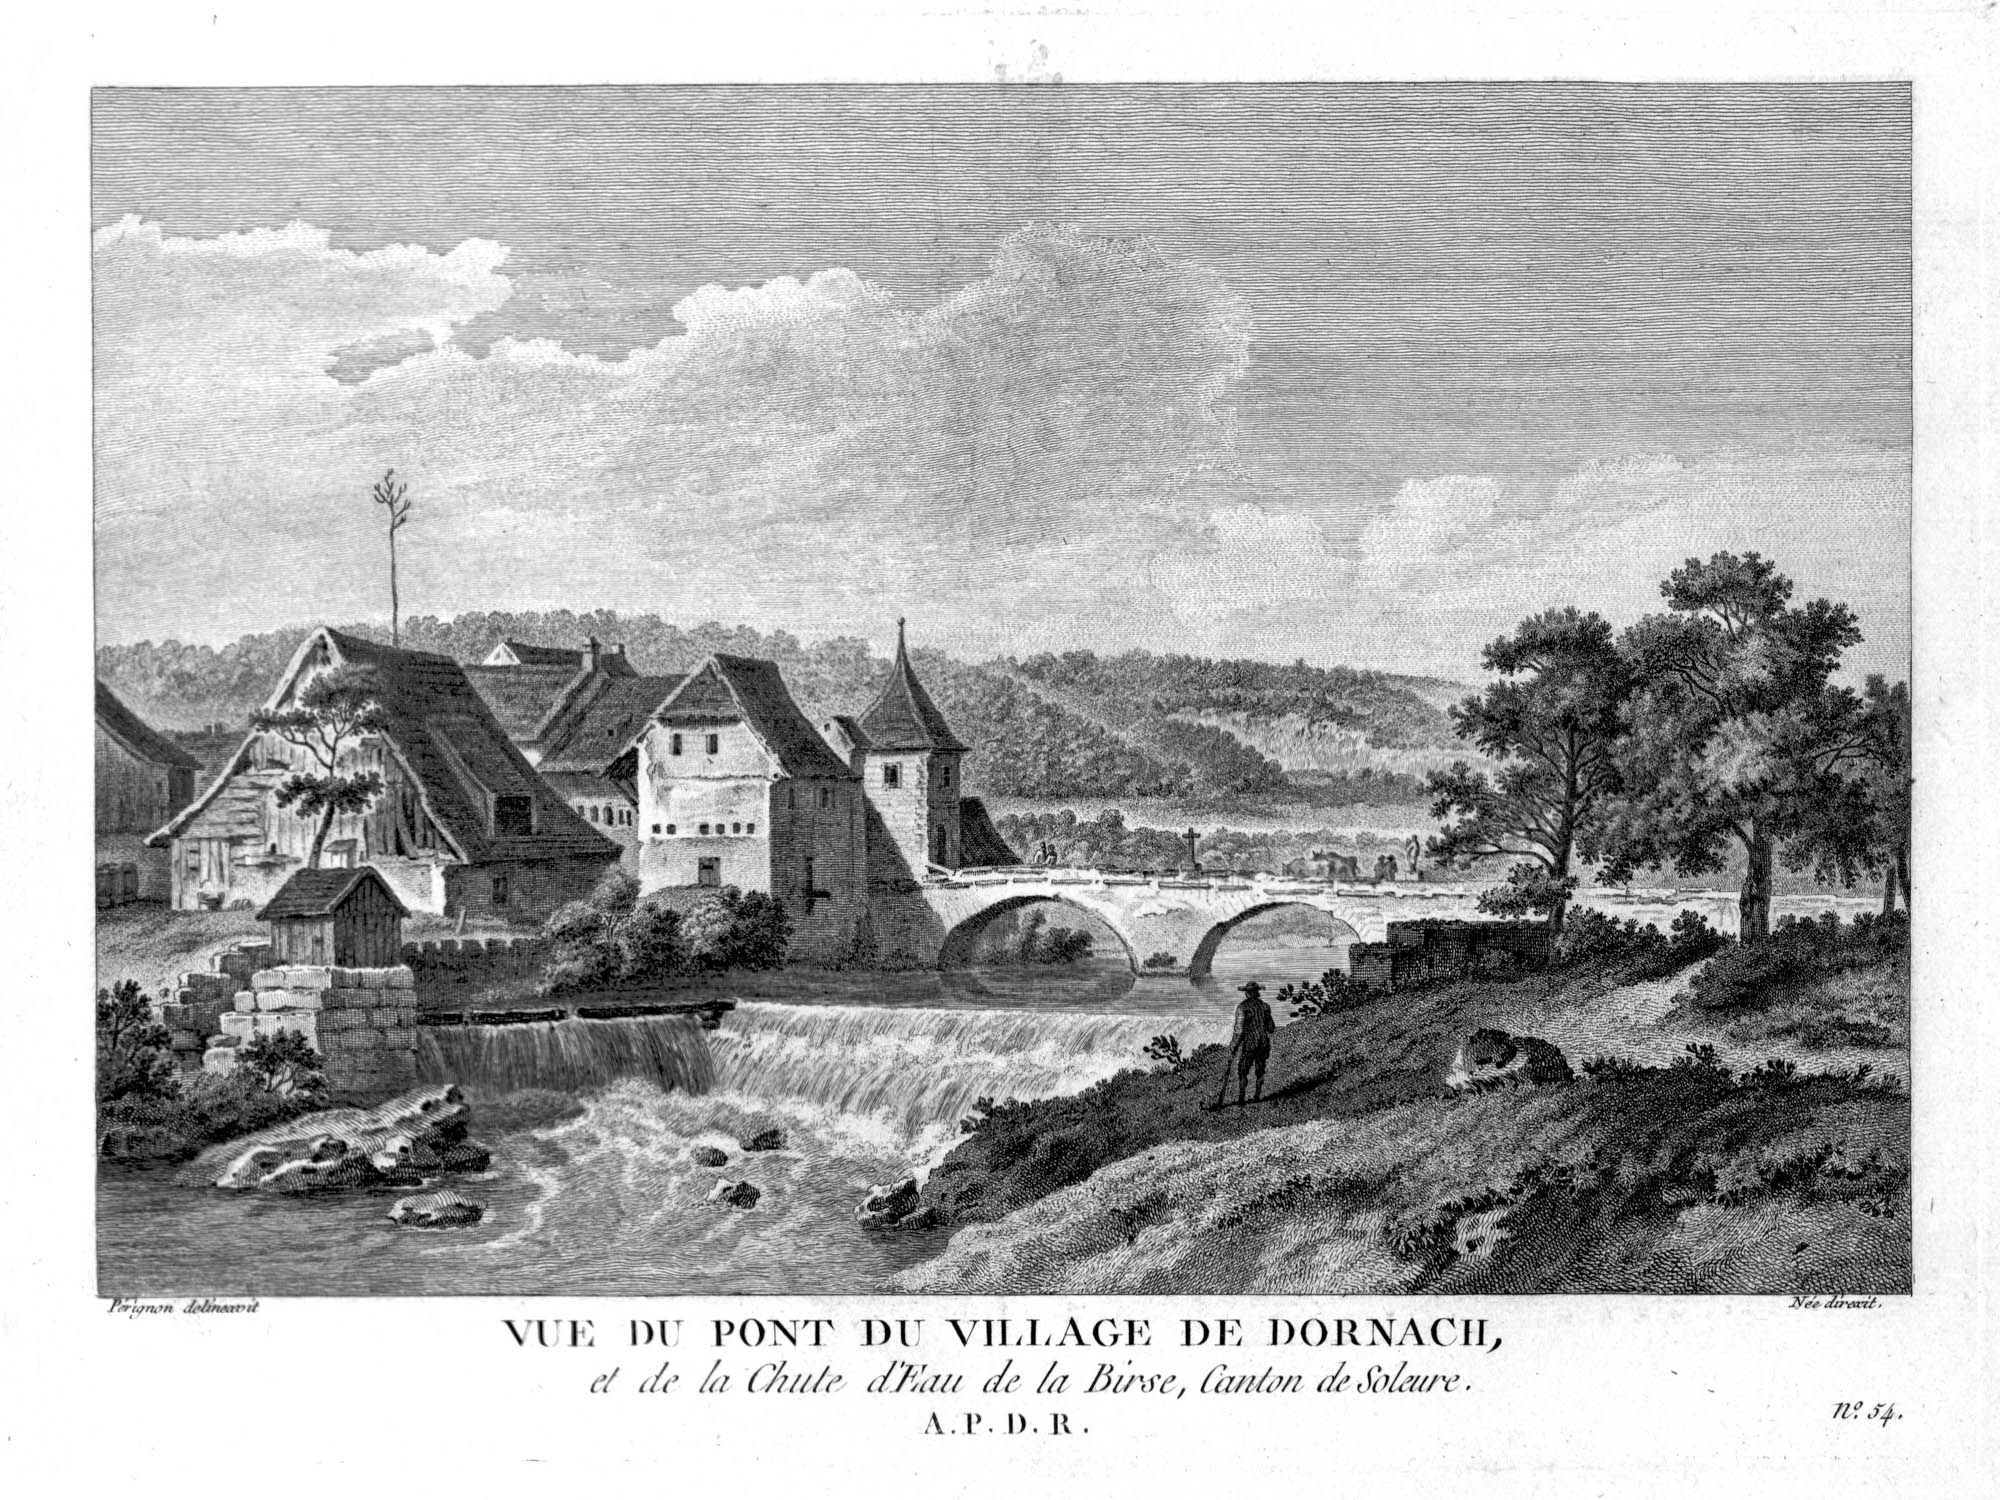 Vue du pont du village de Dornach, et de la Chute d'Eau de la Birse, Canton de Soleure